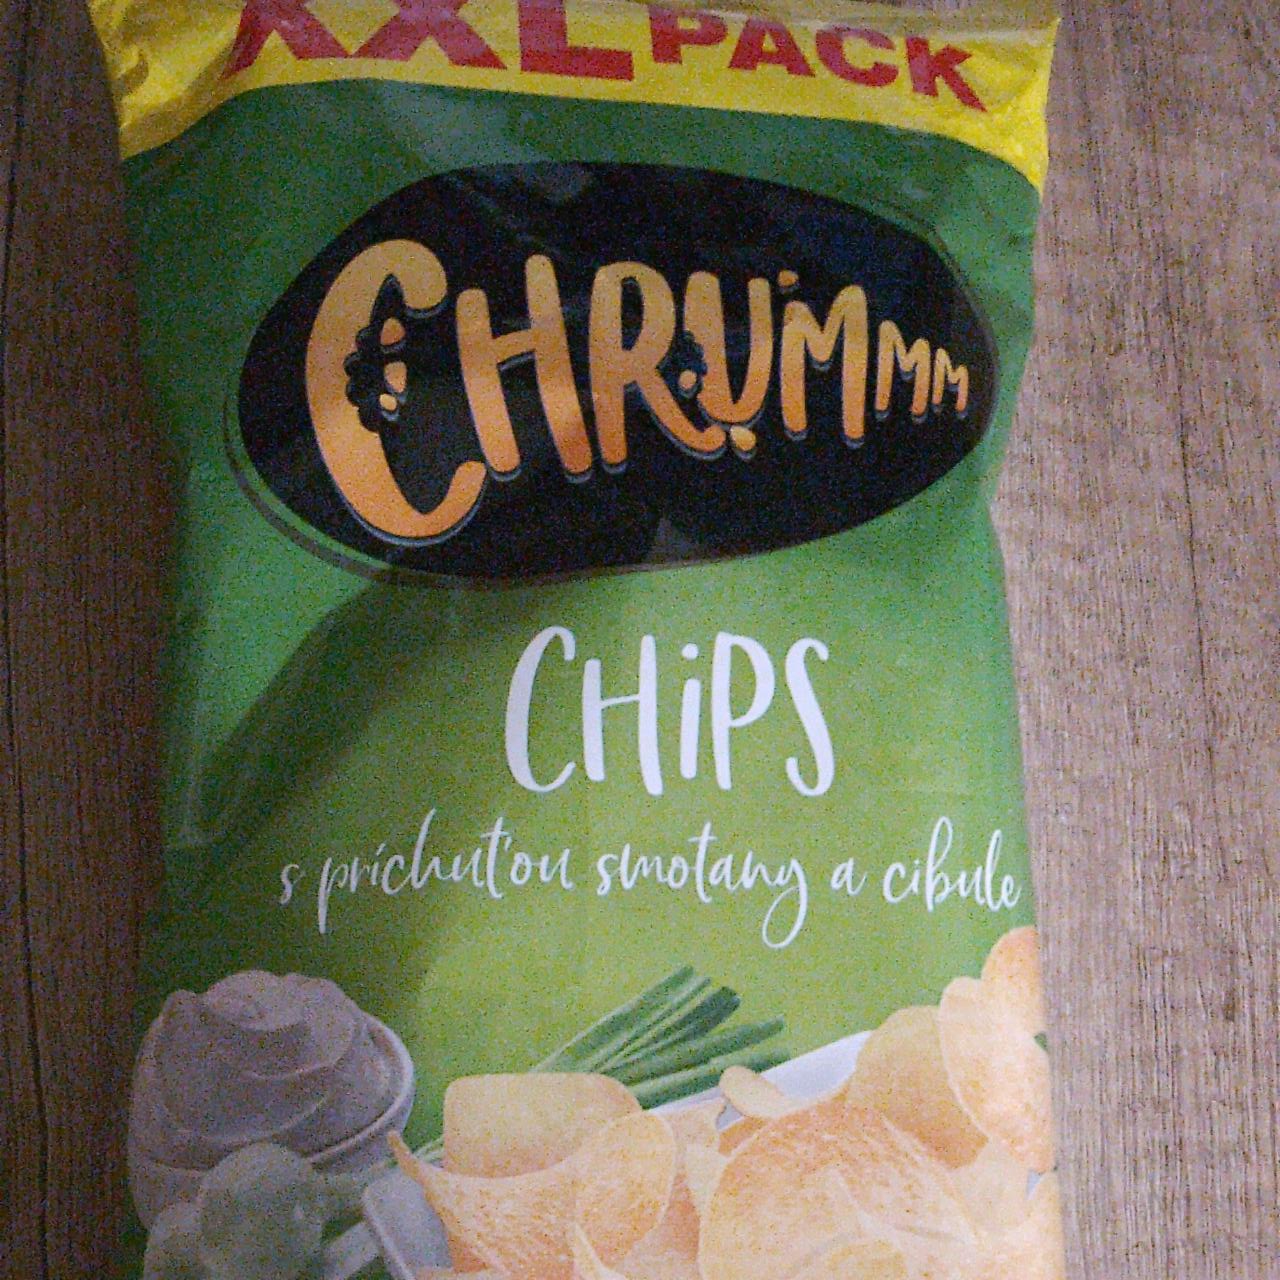 Fotografie - Chips s príchuťou smotany a cibule Chrummm